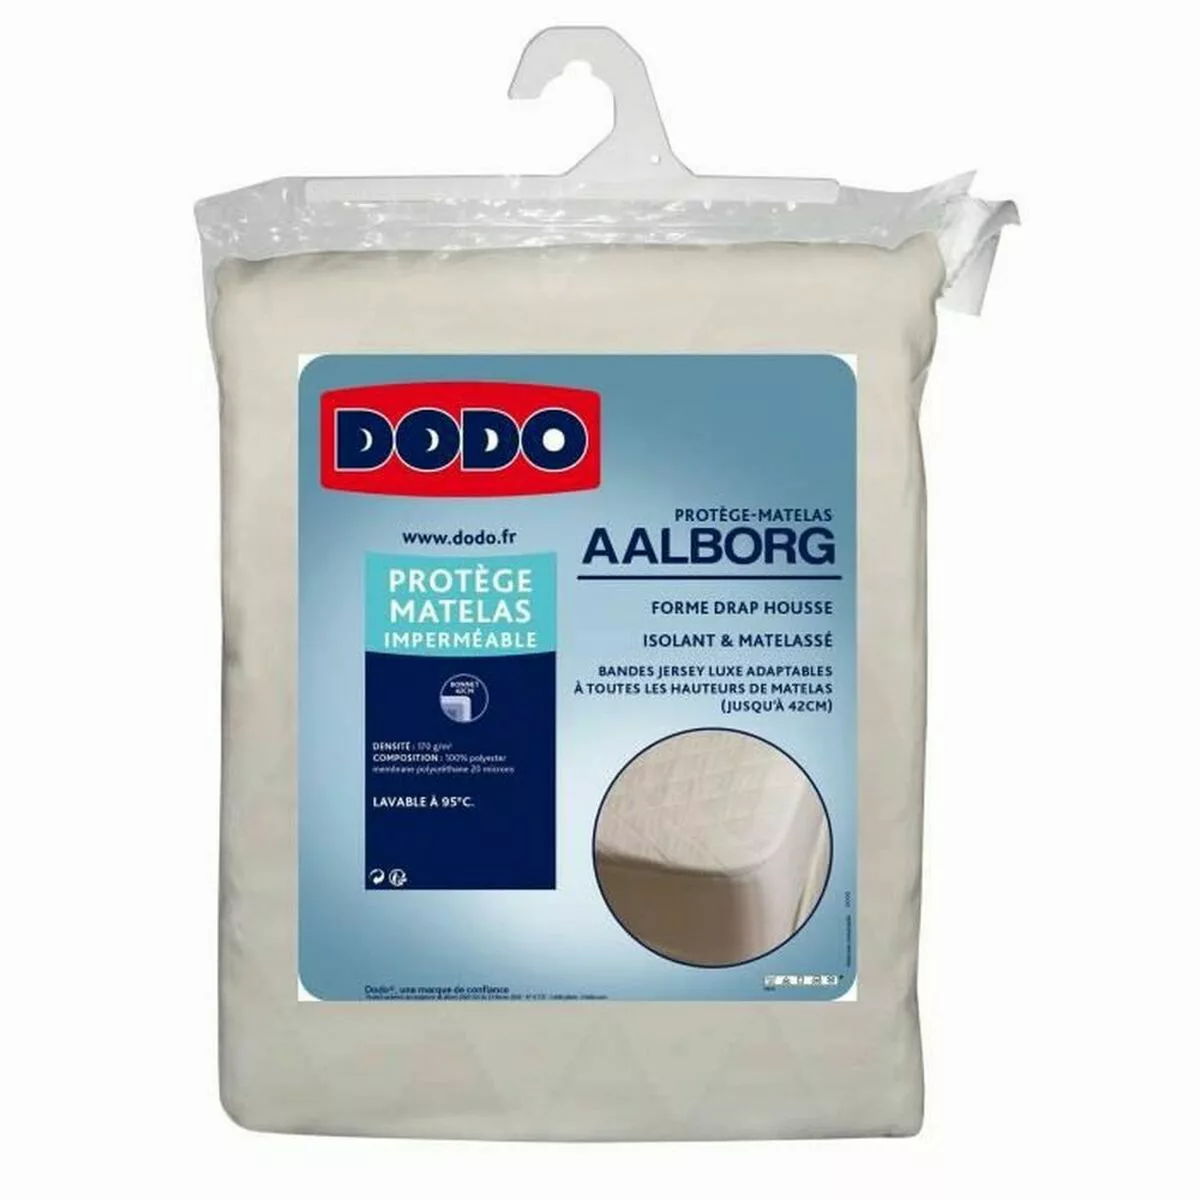 Matratzenschoner Dodo Aalborg (90 X 190) günstig online kaufen